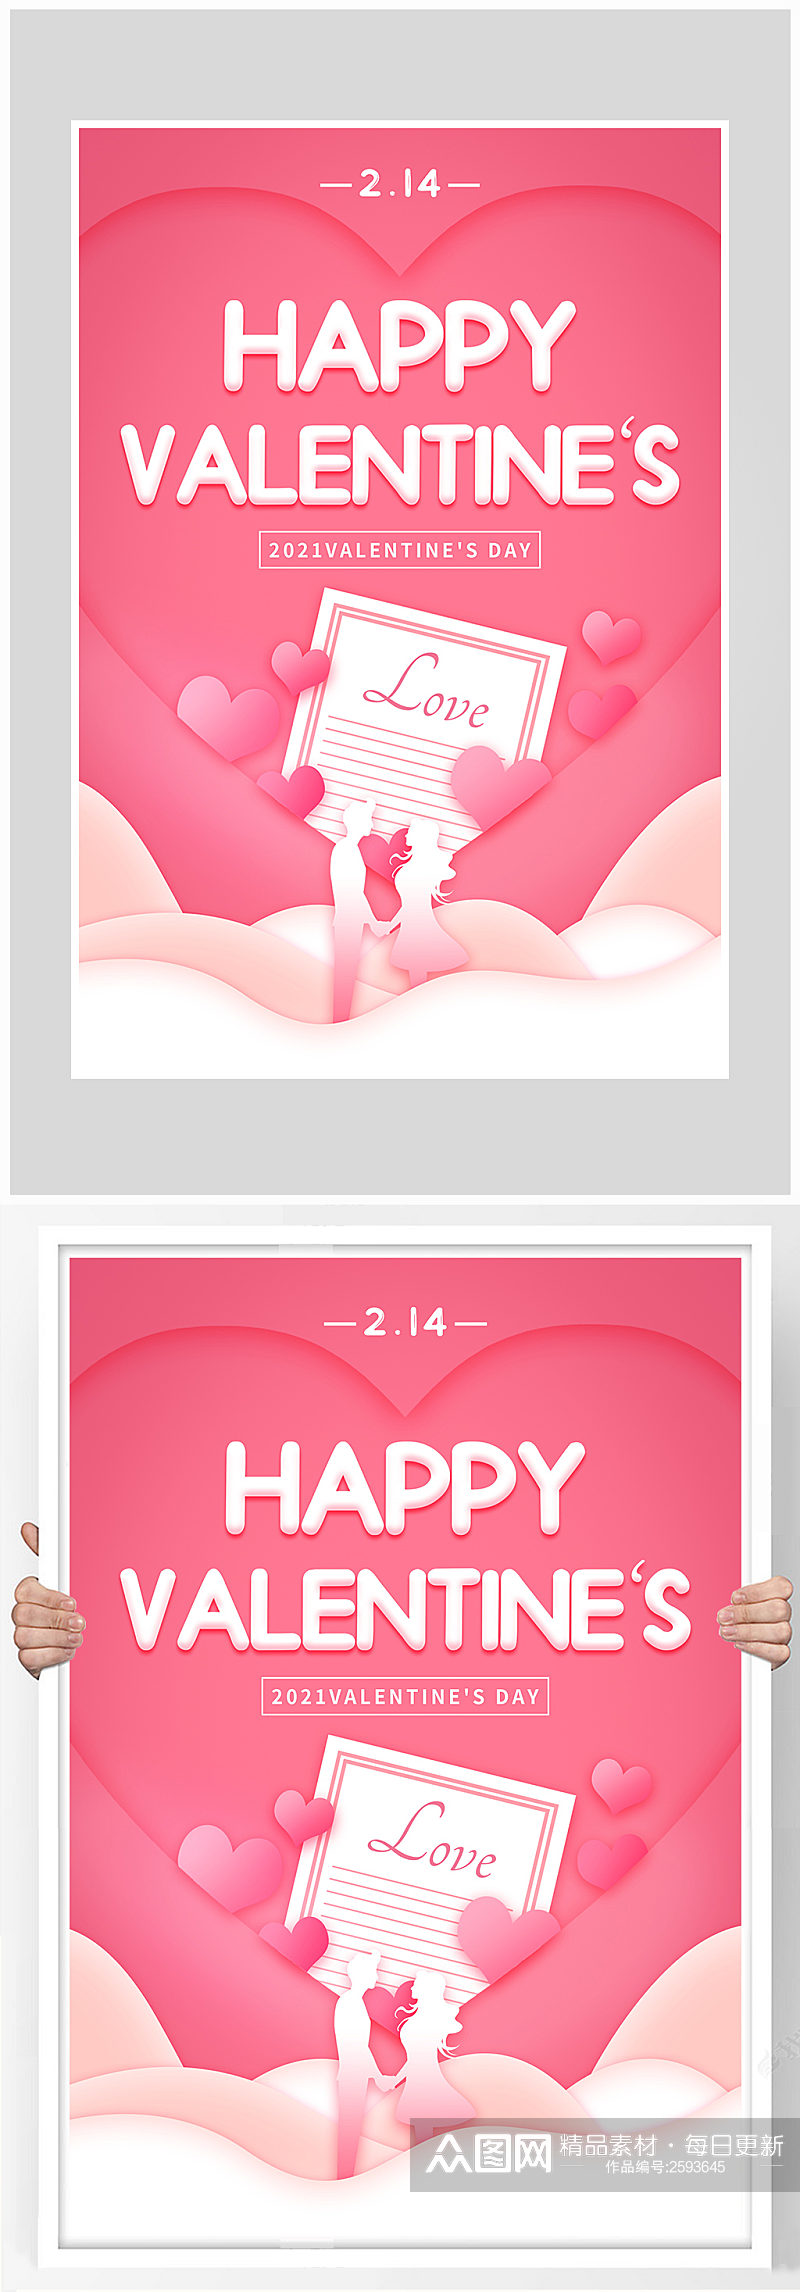 唯美粉色情人节爱情海报设计素材